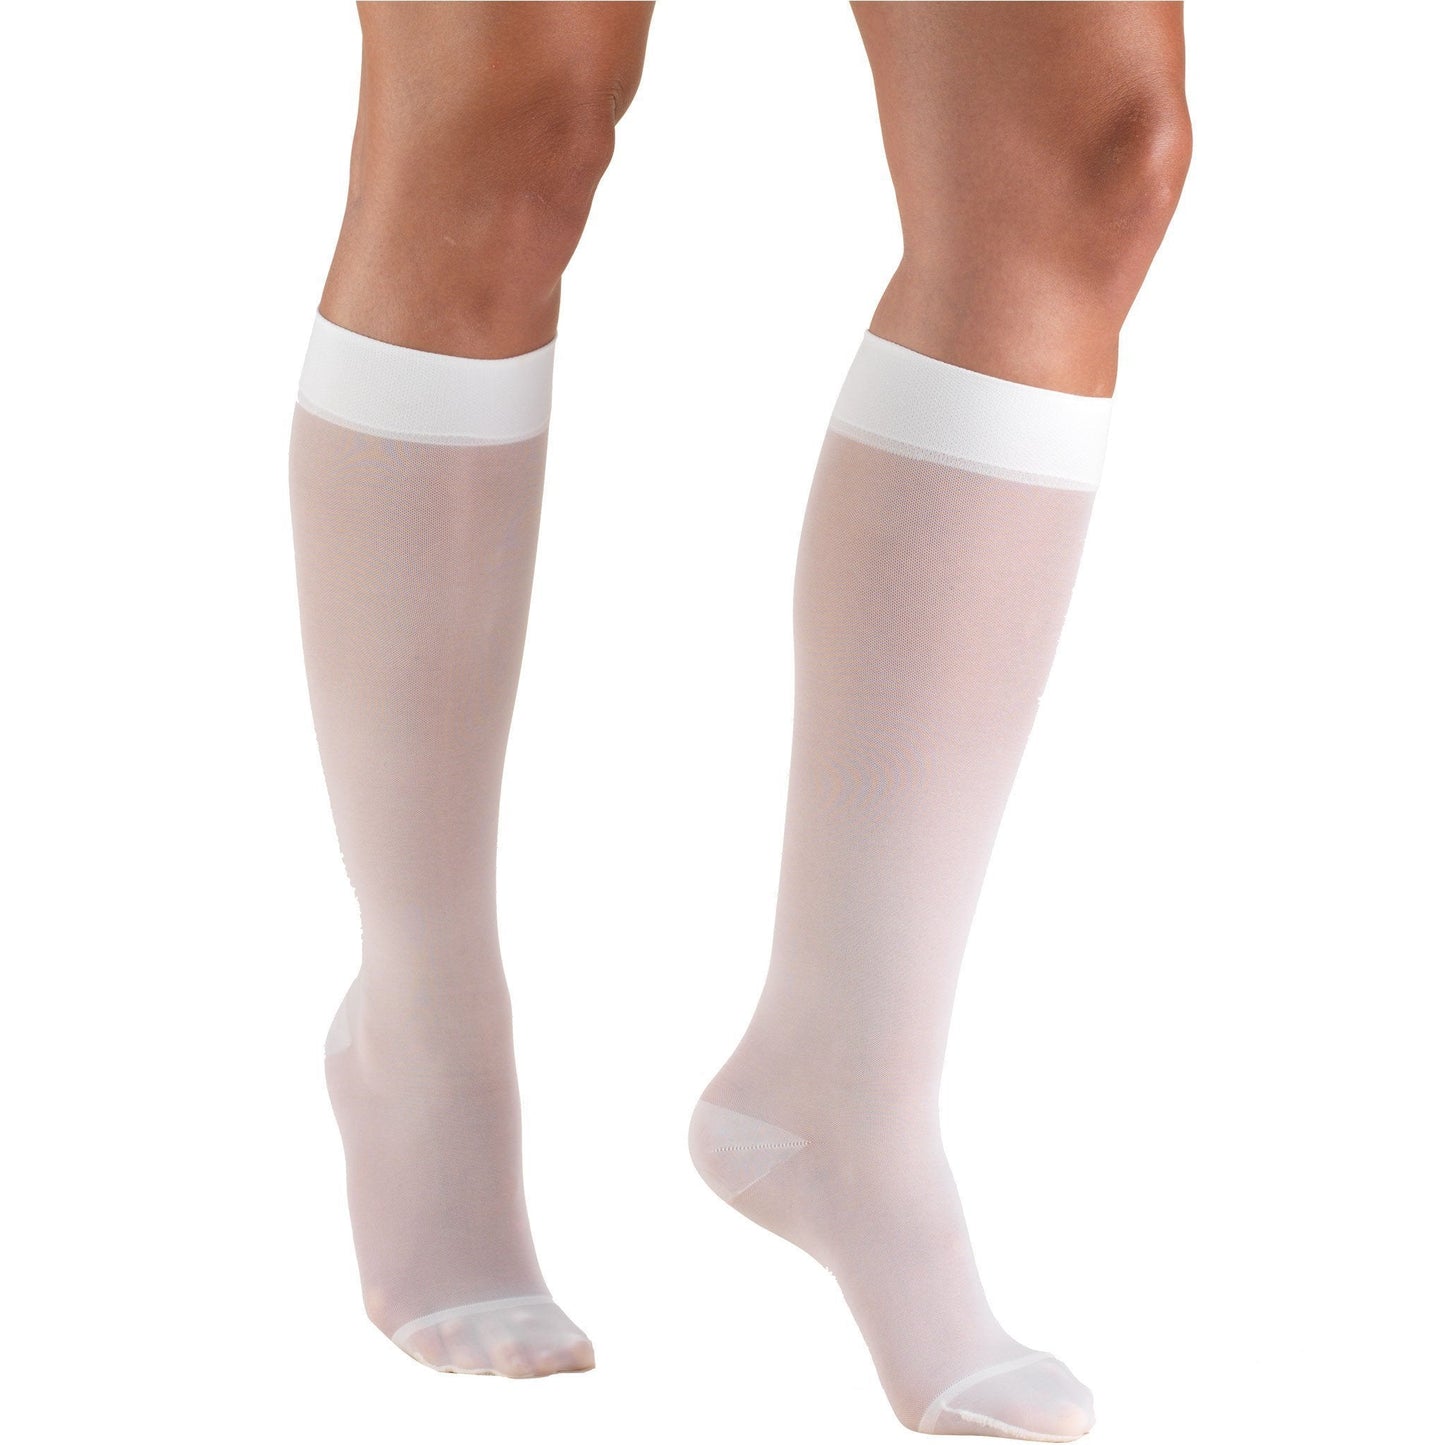 Truform Lites Women's 15-20 mmHg Knee High, White